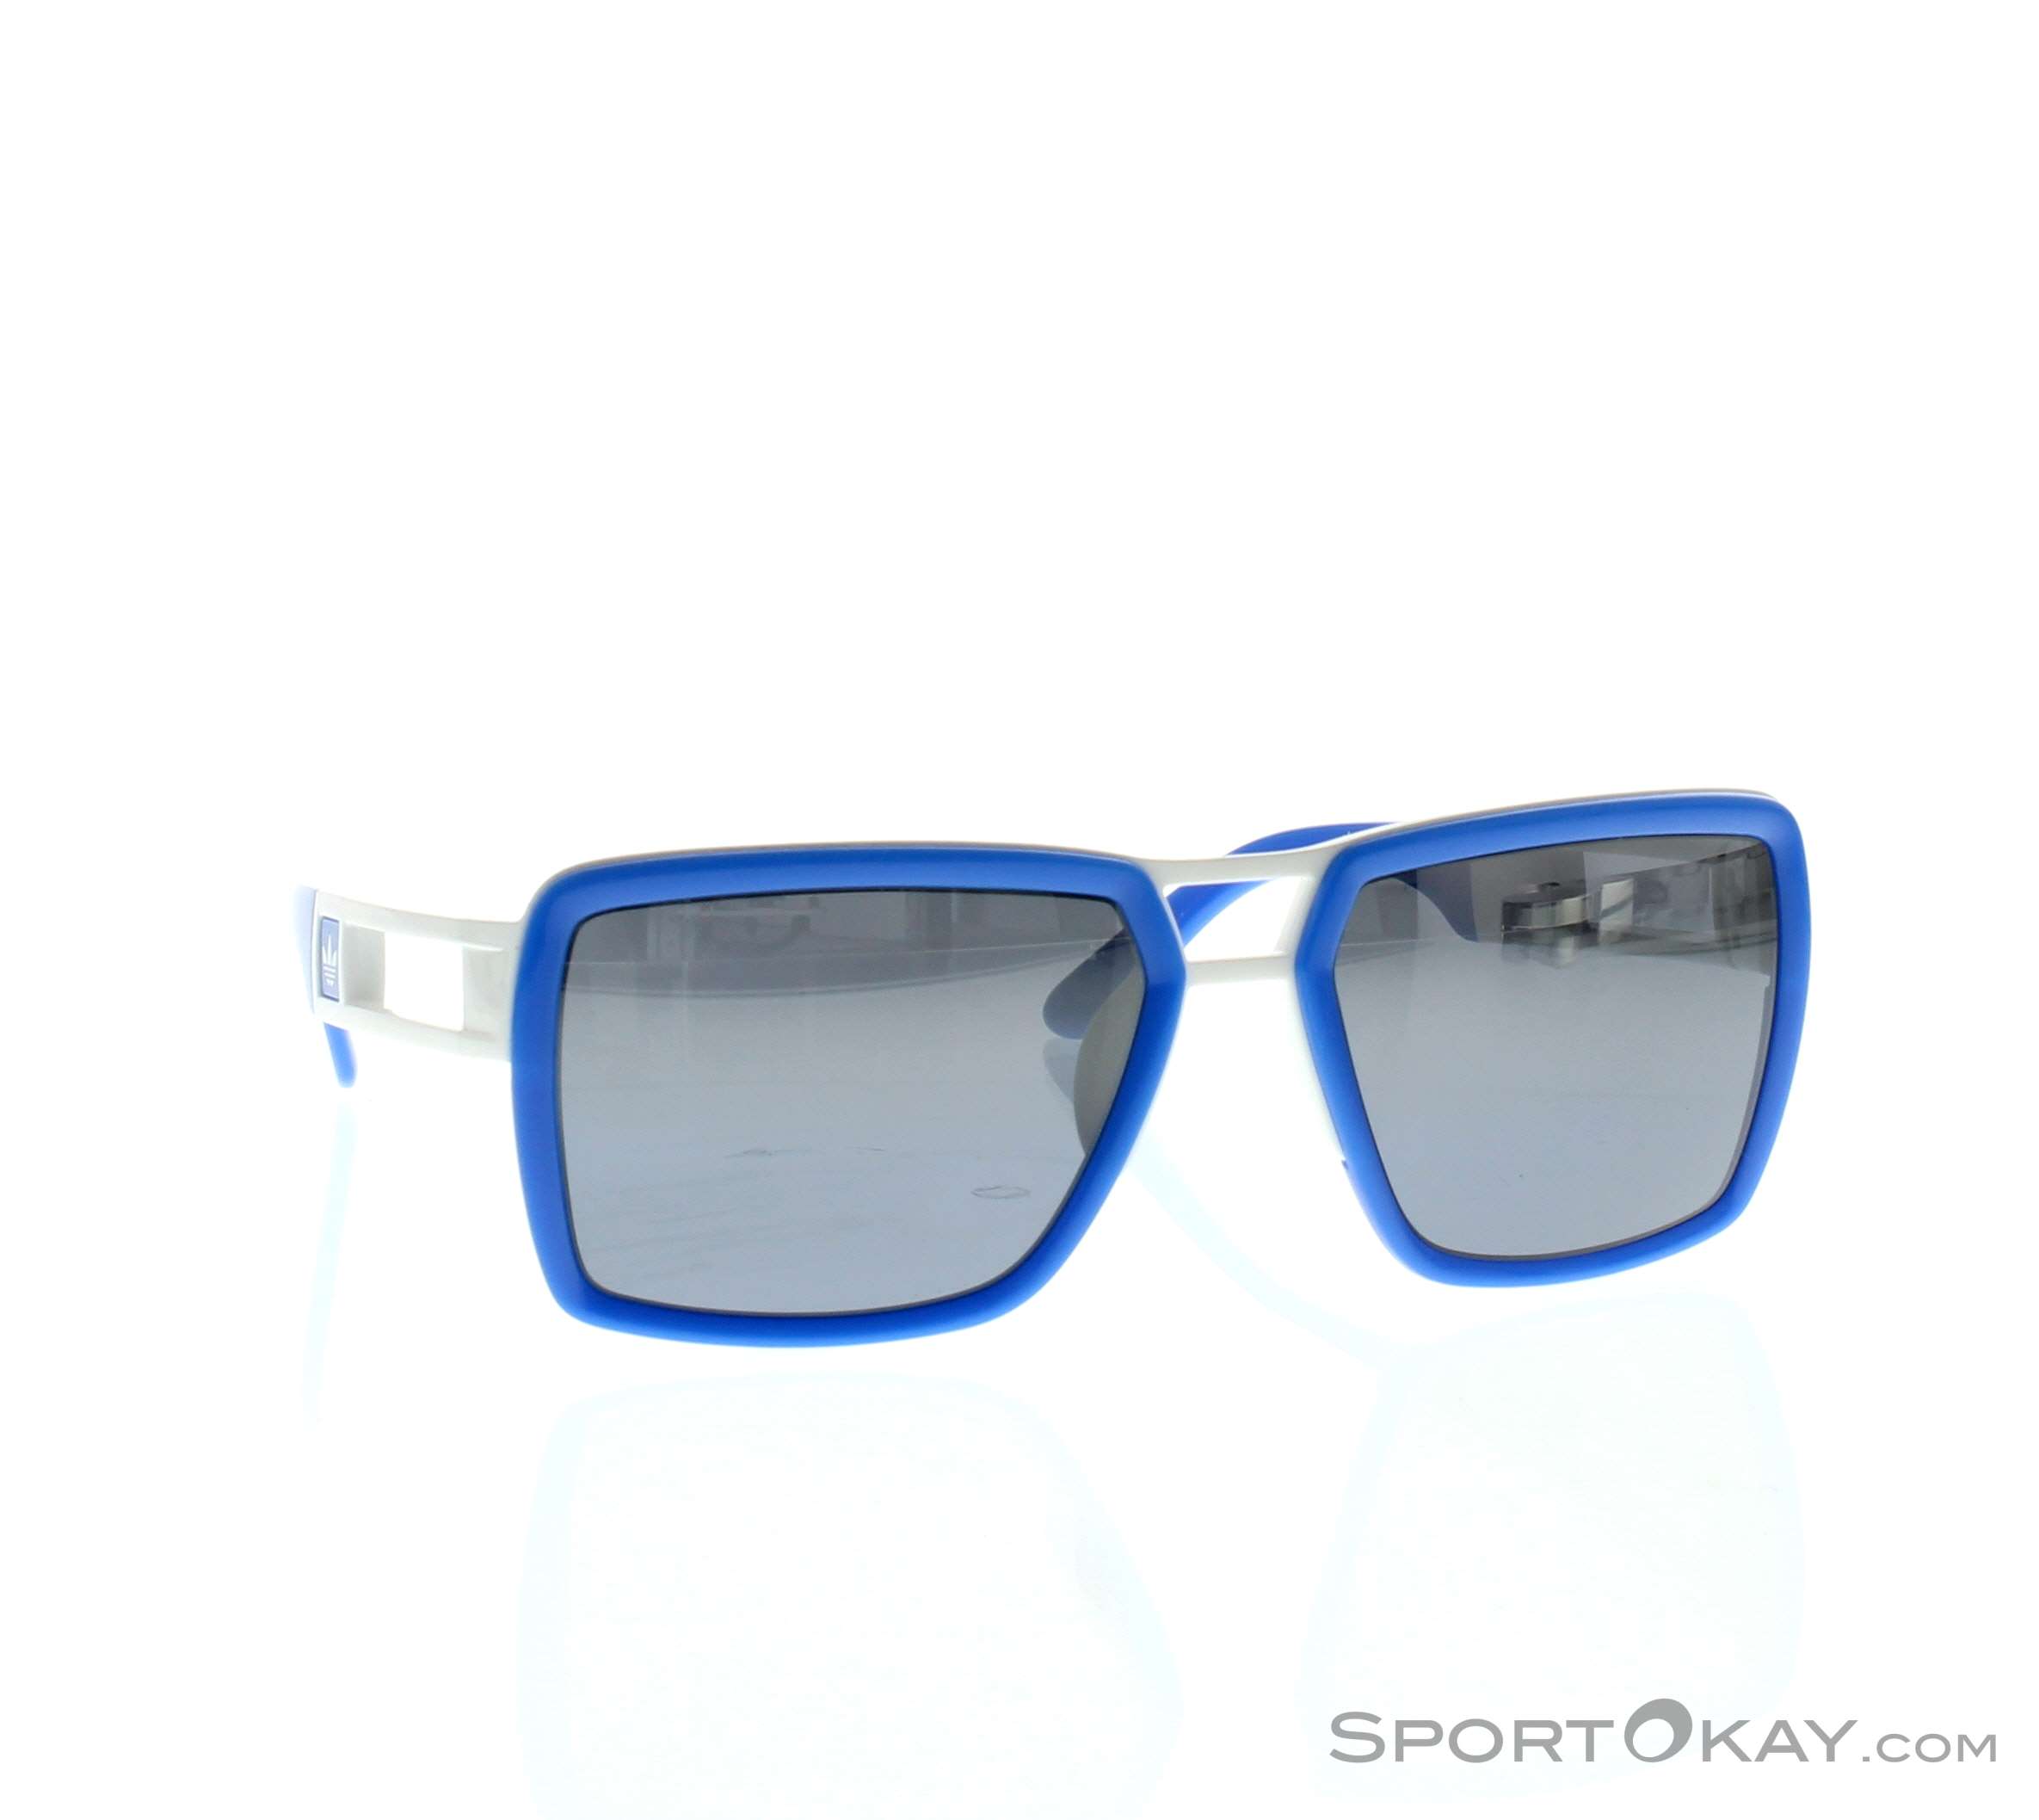 Monografía Moderador Impresión Adidas customize Sunglasses - Fashion Sunglasses - Sunglasses - Fashion -  All